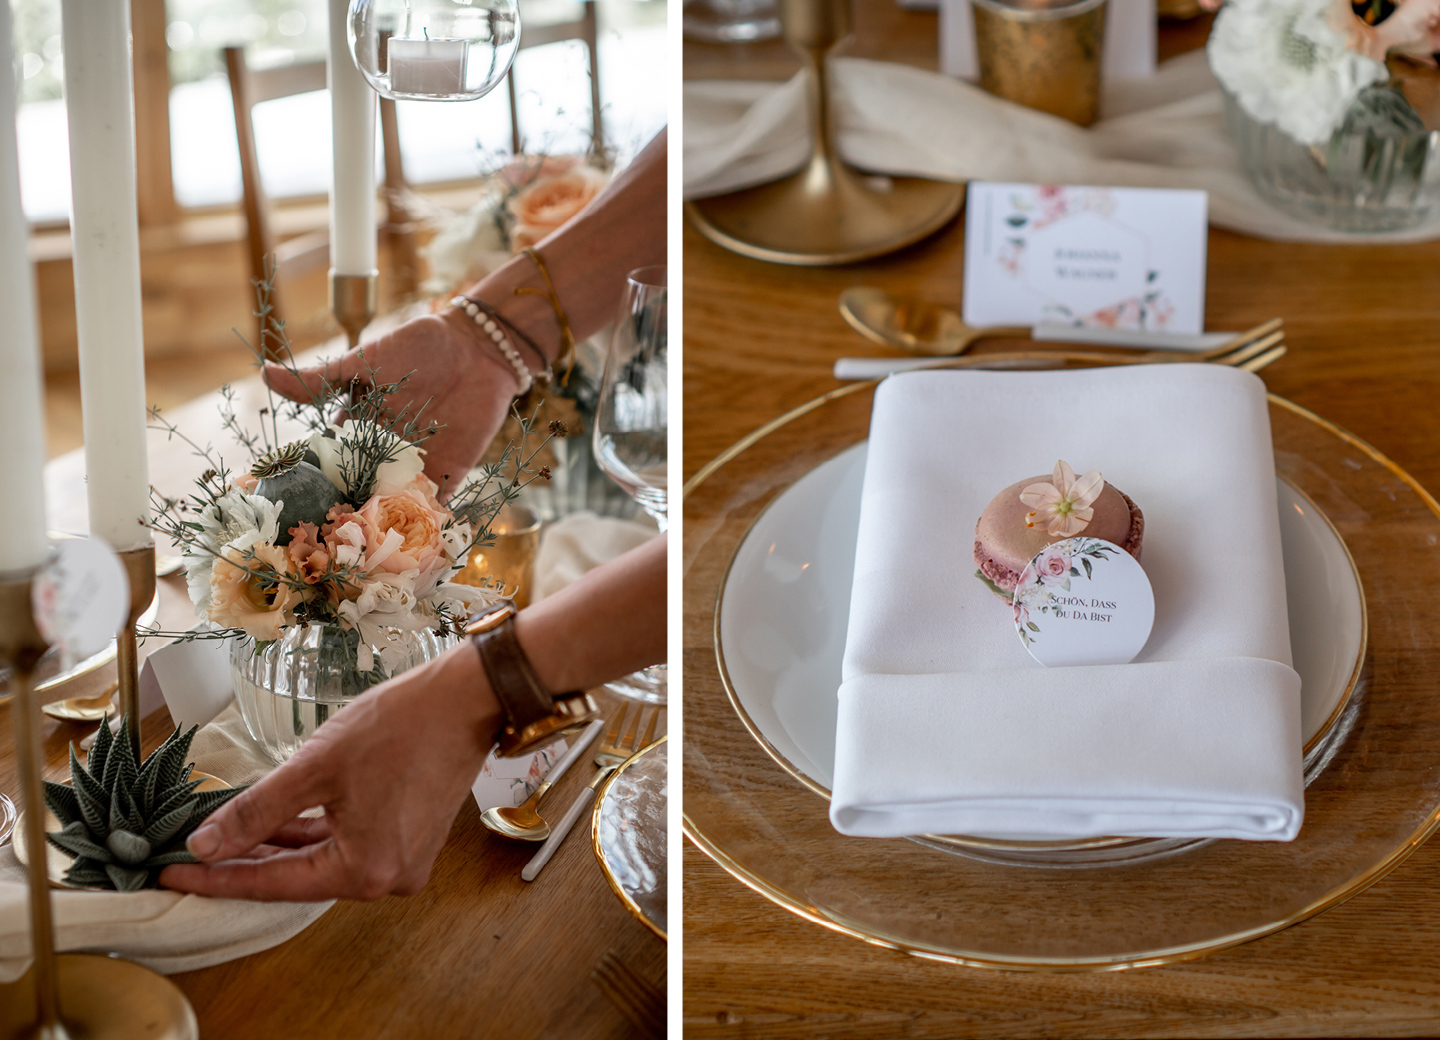 Für die Hochzeitscheckliste: Süßes Gastgeschenk für die Hochzeitsgäste: Macaron mit persönlichem Gruß